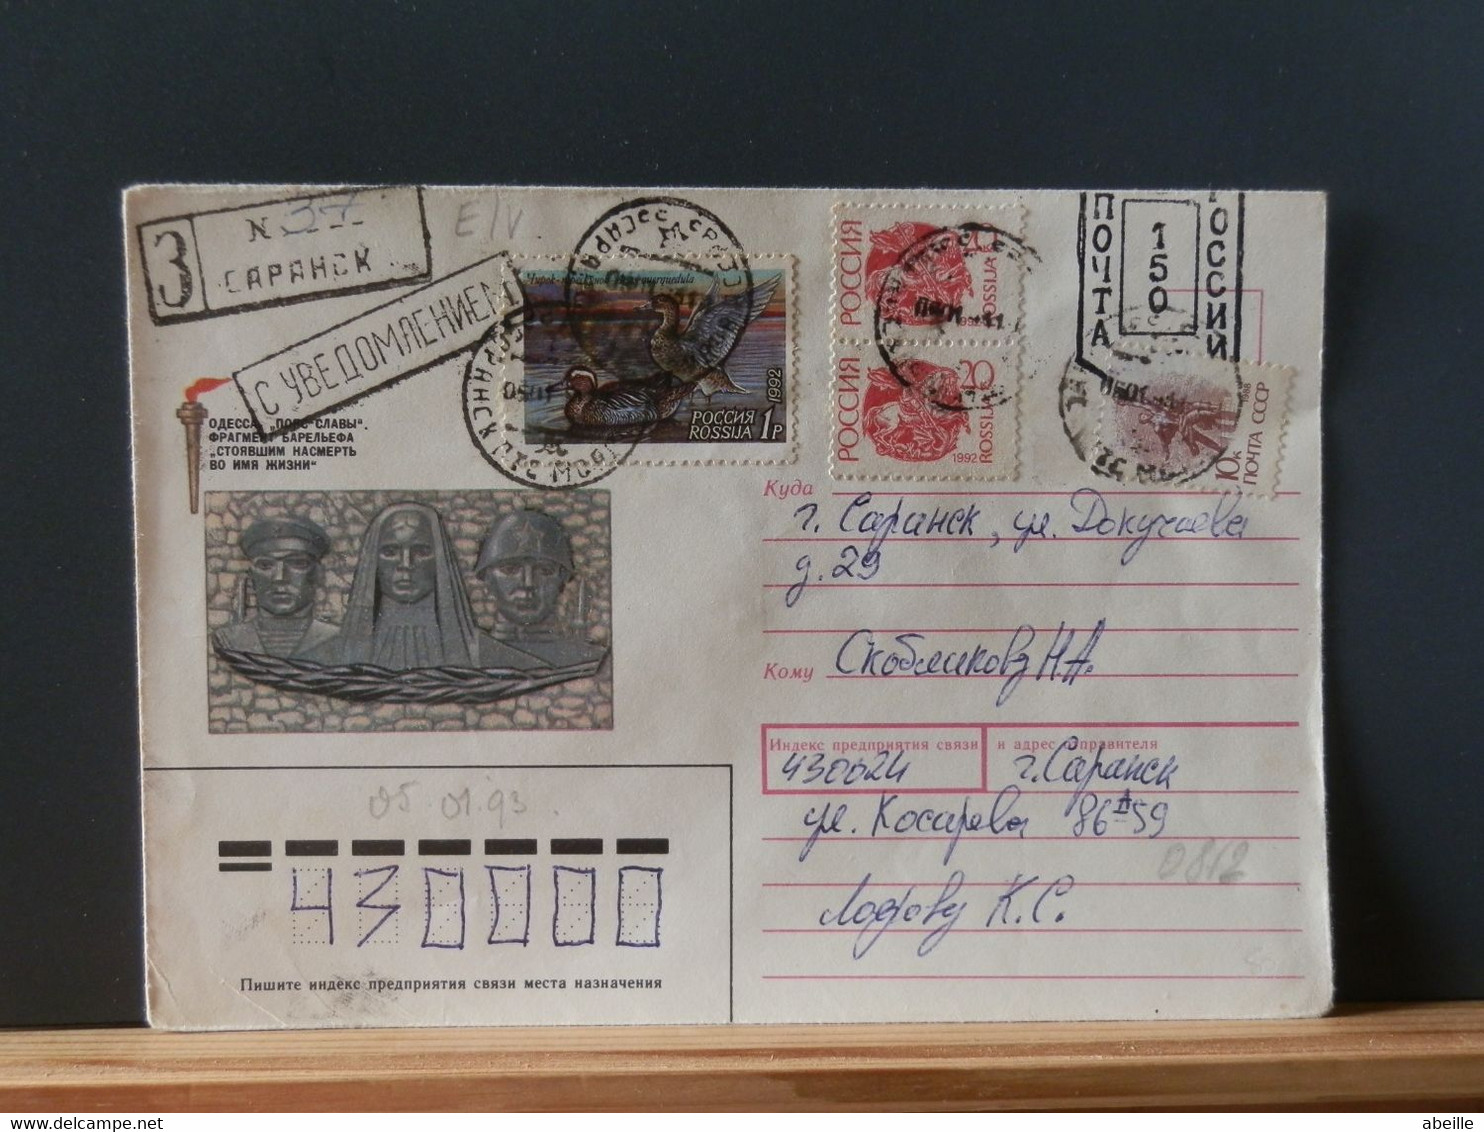 RUSLANDBOX1/812: LETTRE  RUSSE  EMM. PROVISOIRE 1993/5 FIN DE L'USSR AFFR.. DE FORTUNE - Lettres & Documents